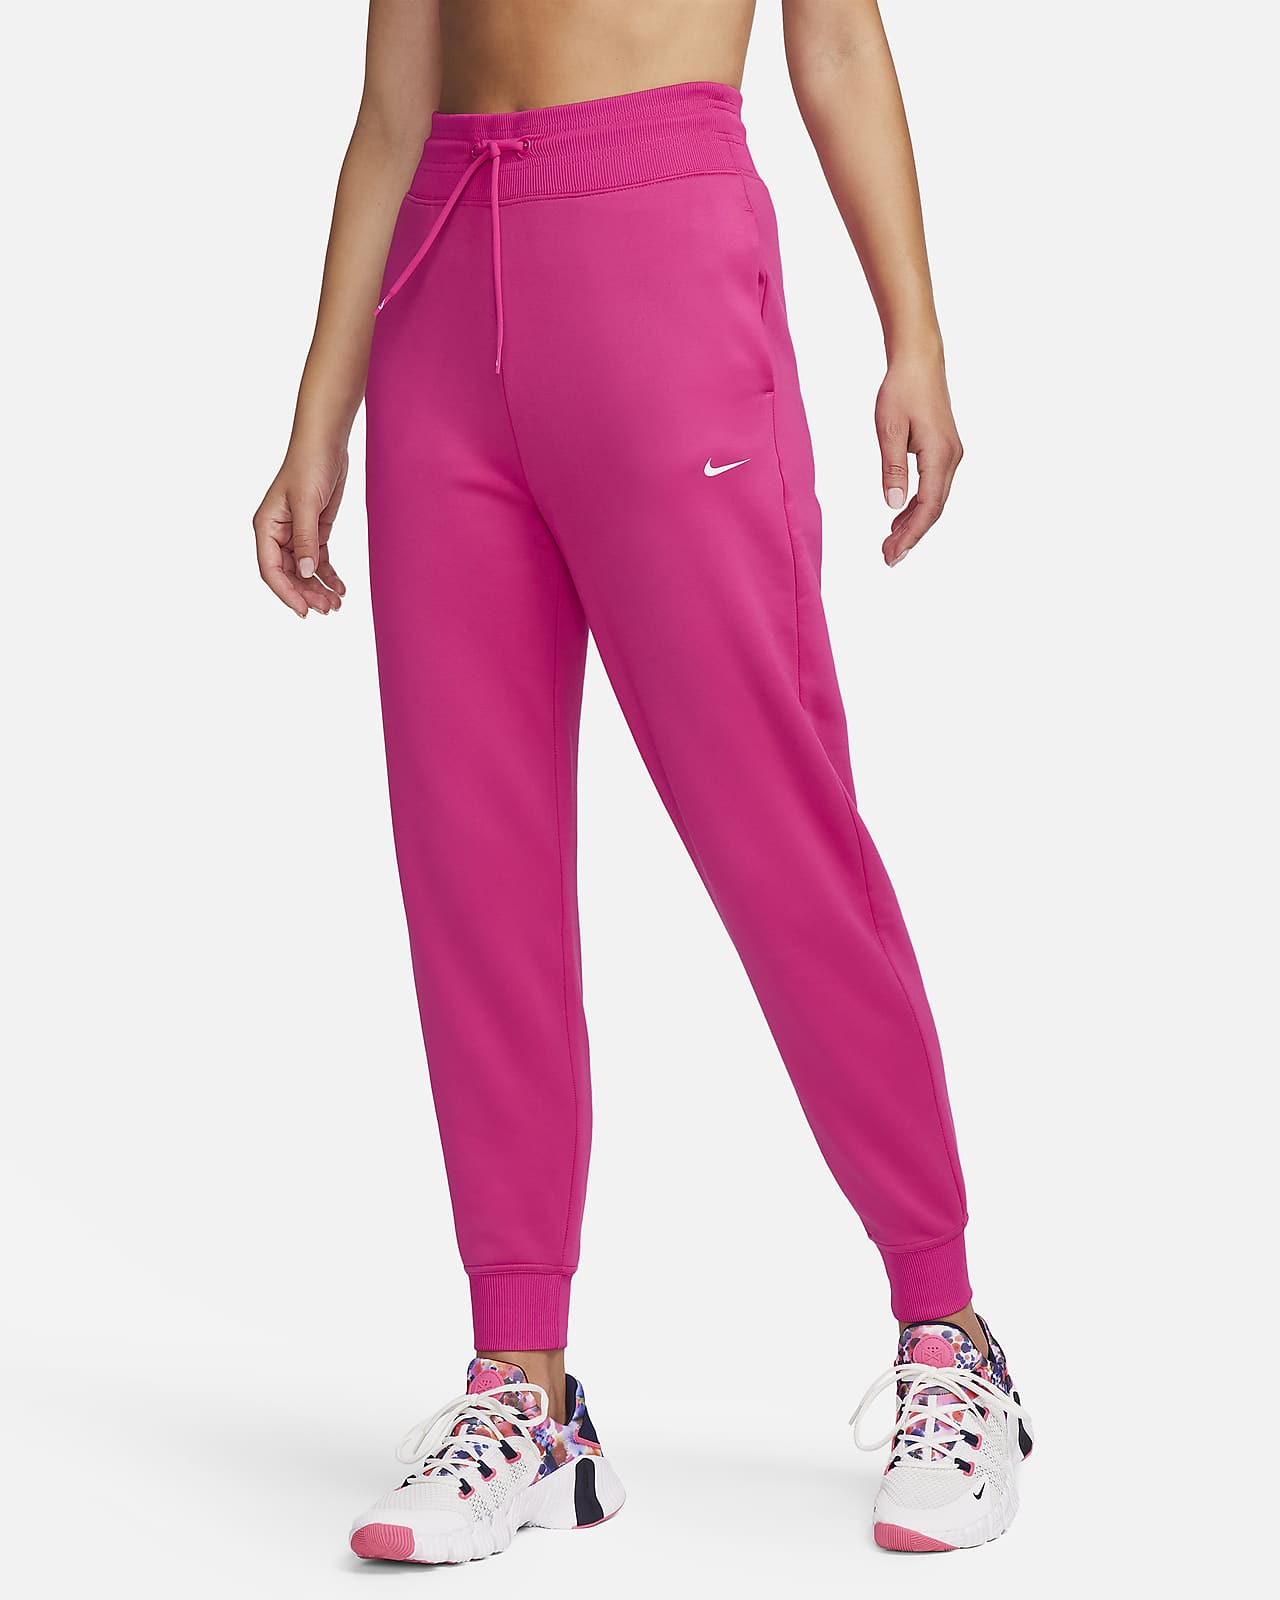 Pantalon de Jogging Femme Taille Haute Rose Coton Avec Poches –